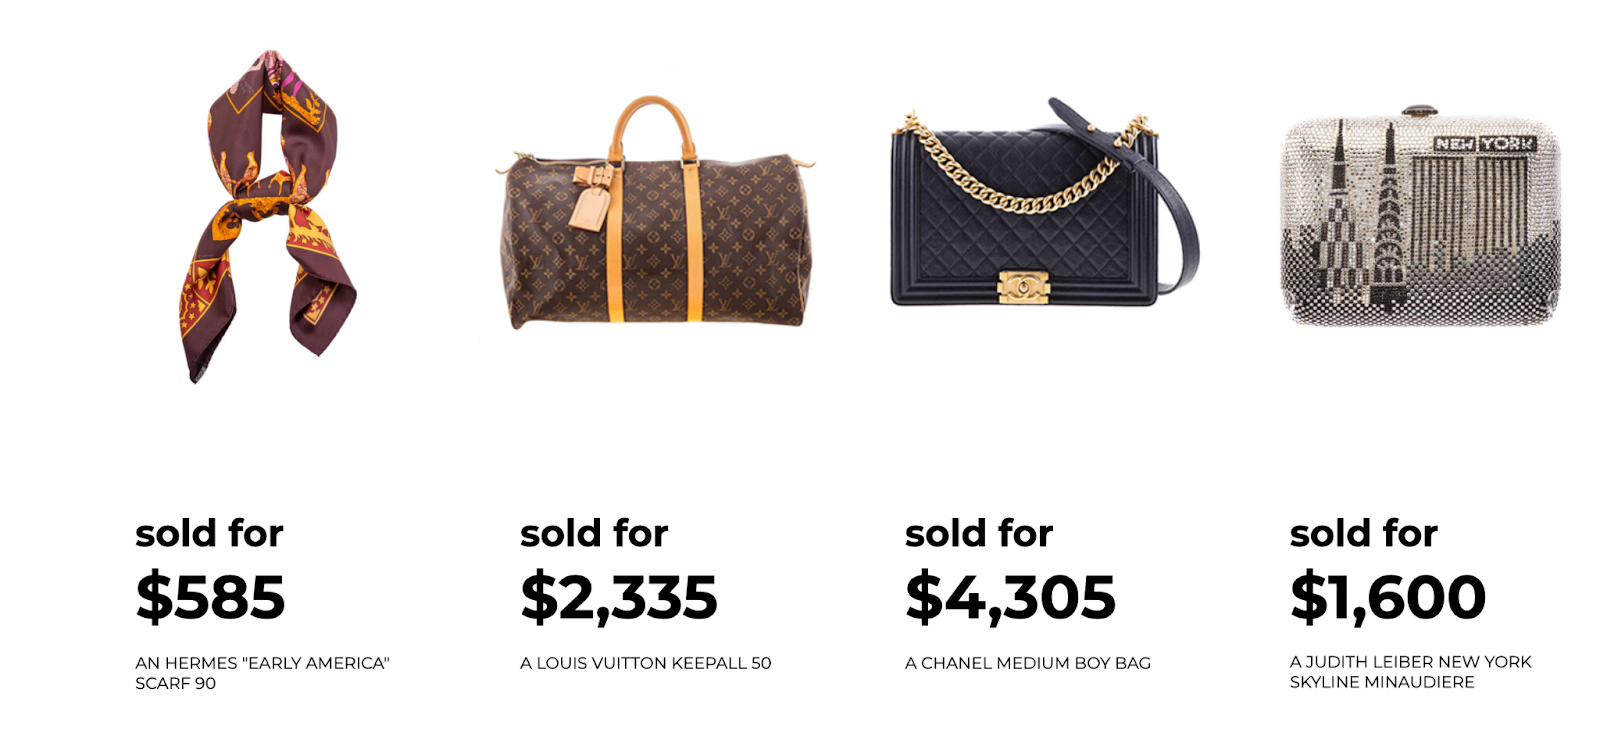 Sell designer handbags and purses online - Sell Handbags Online